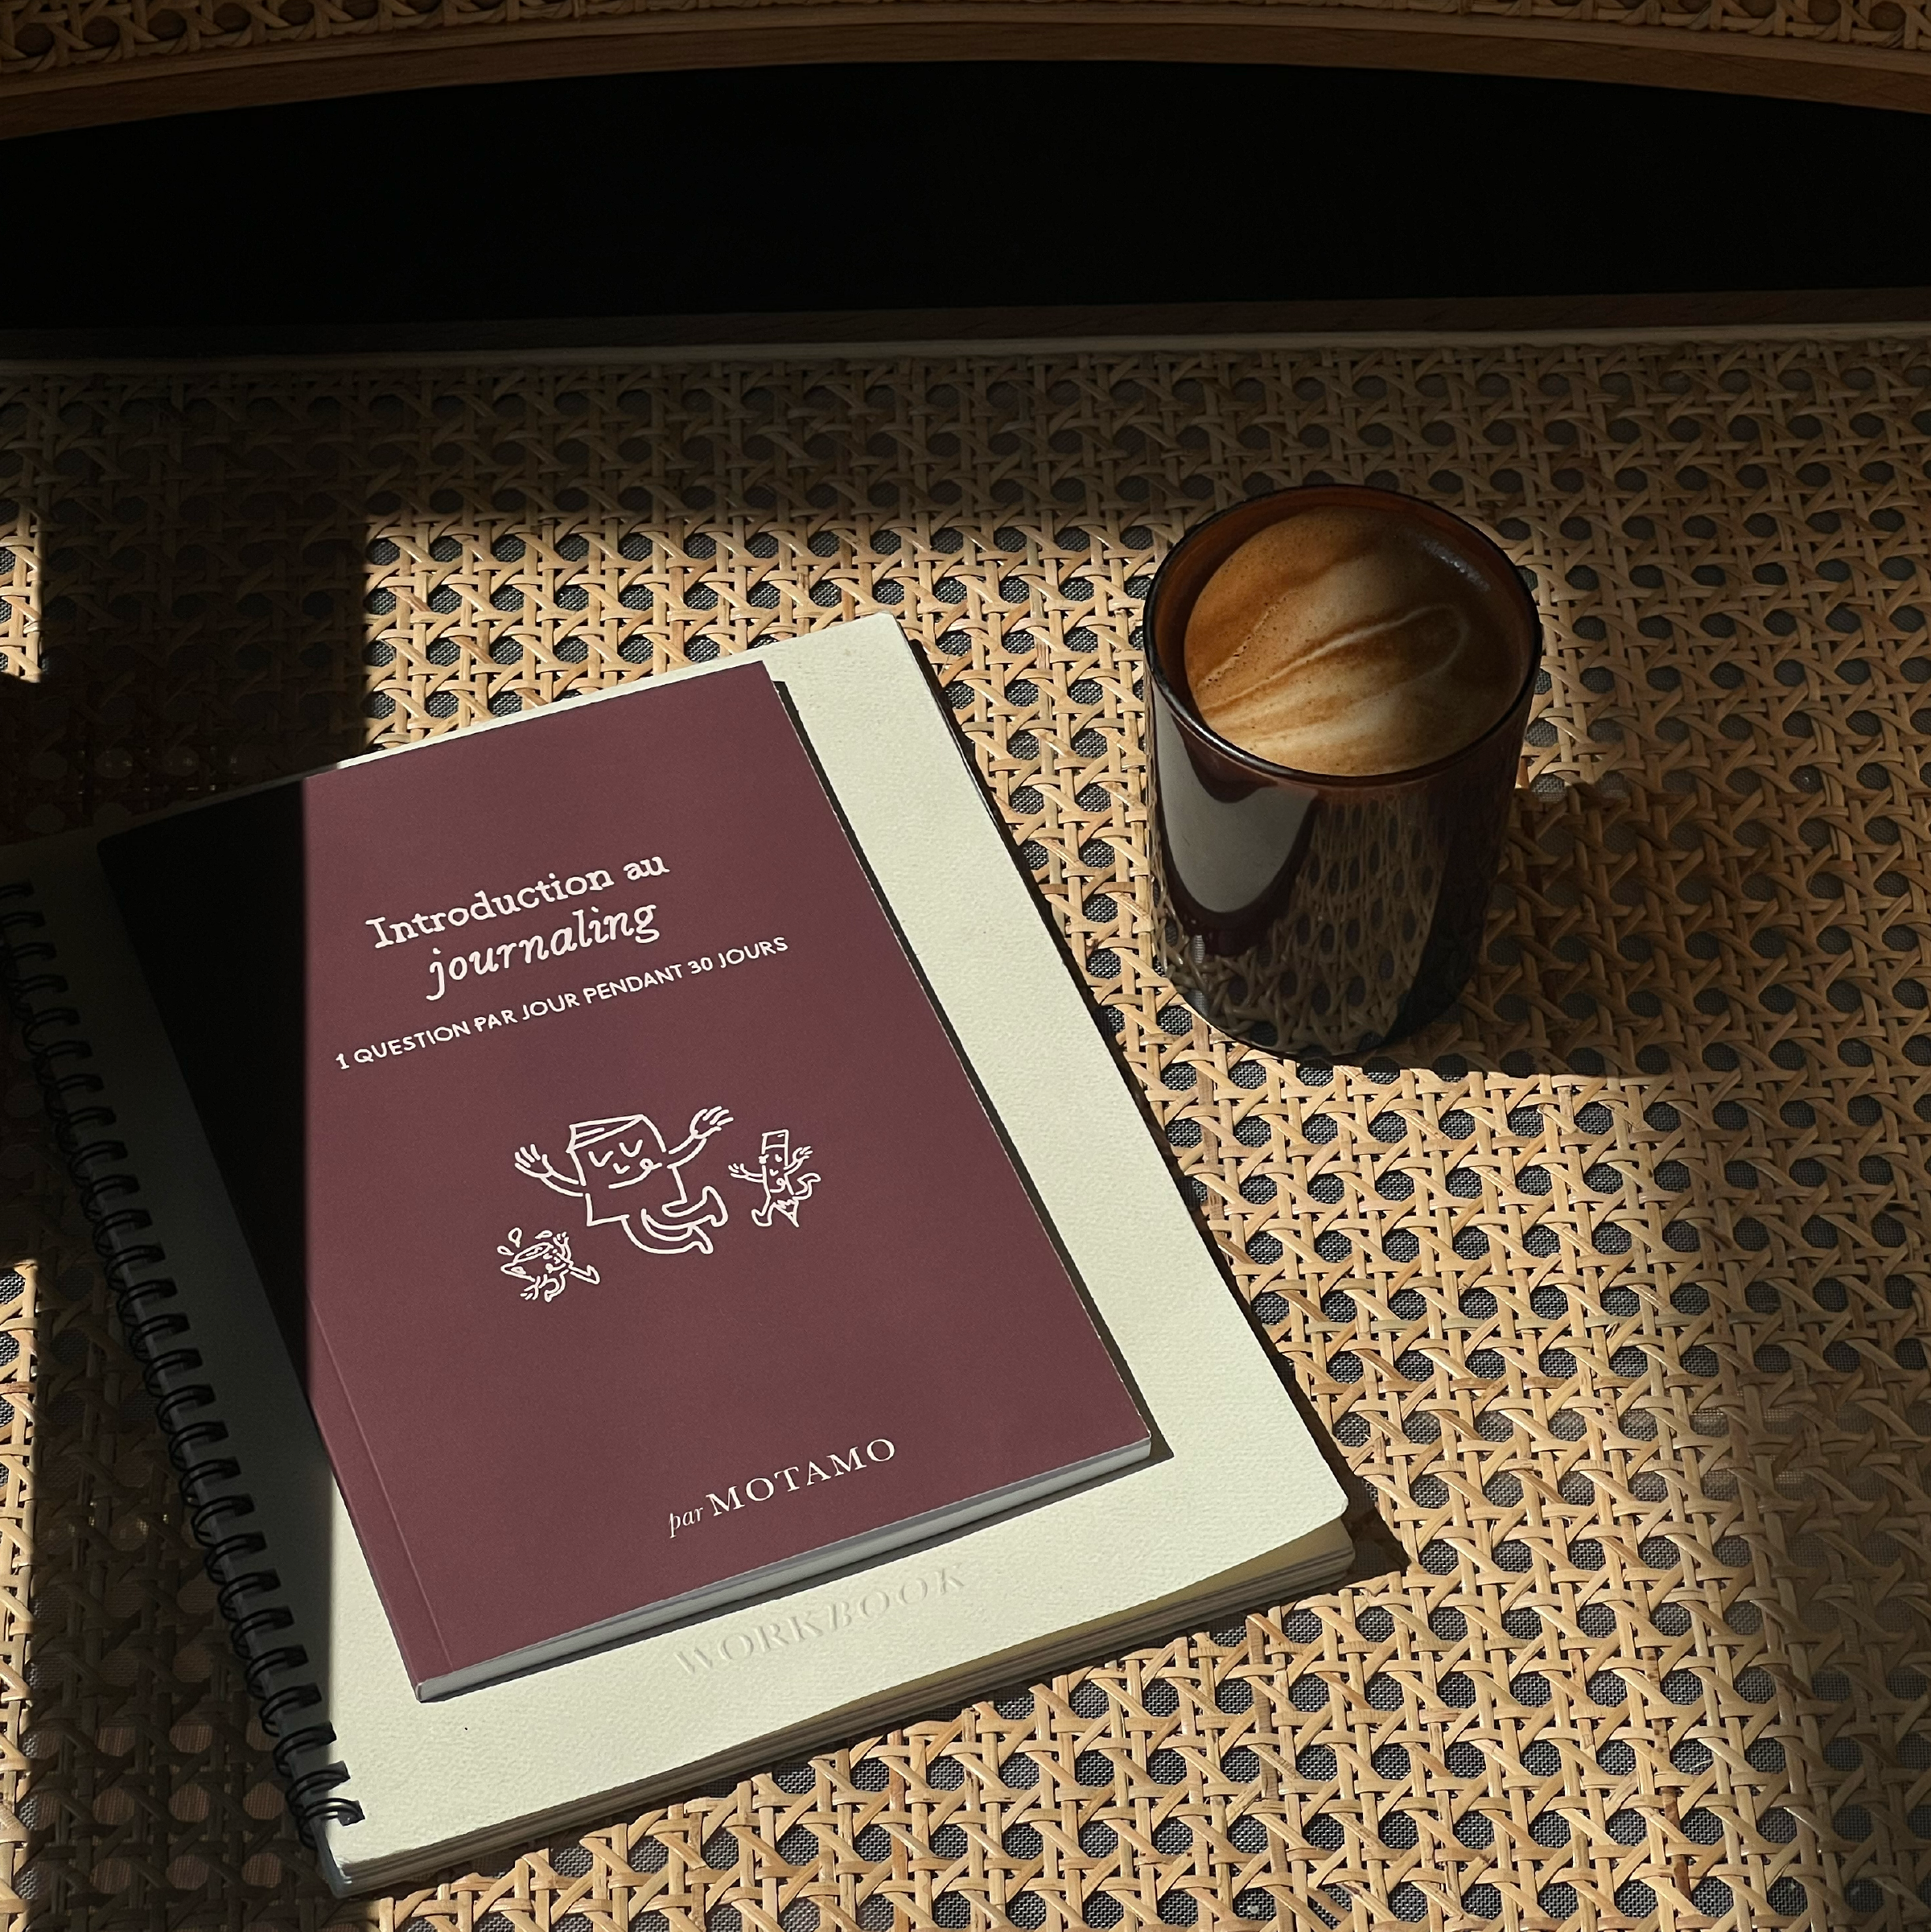 Introduction au Journaling - Une question par jour pendant 30 jours (Burgundy)